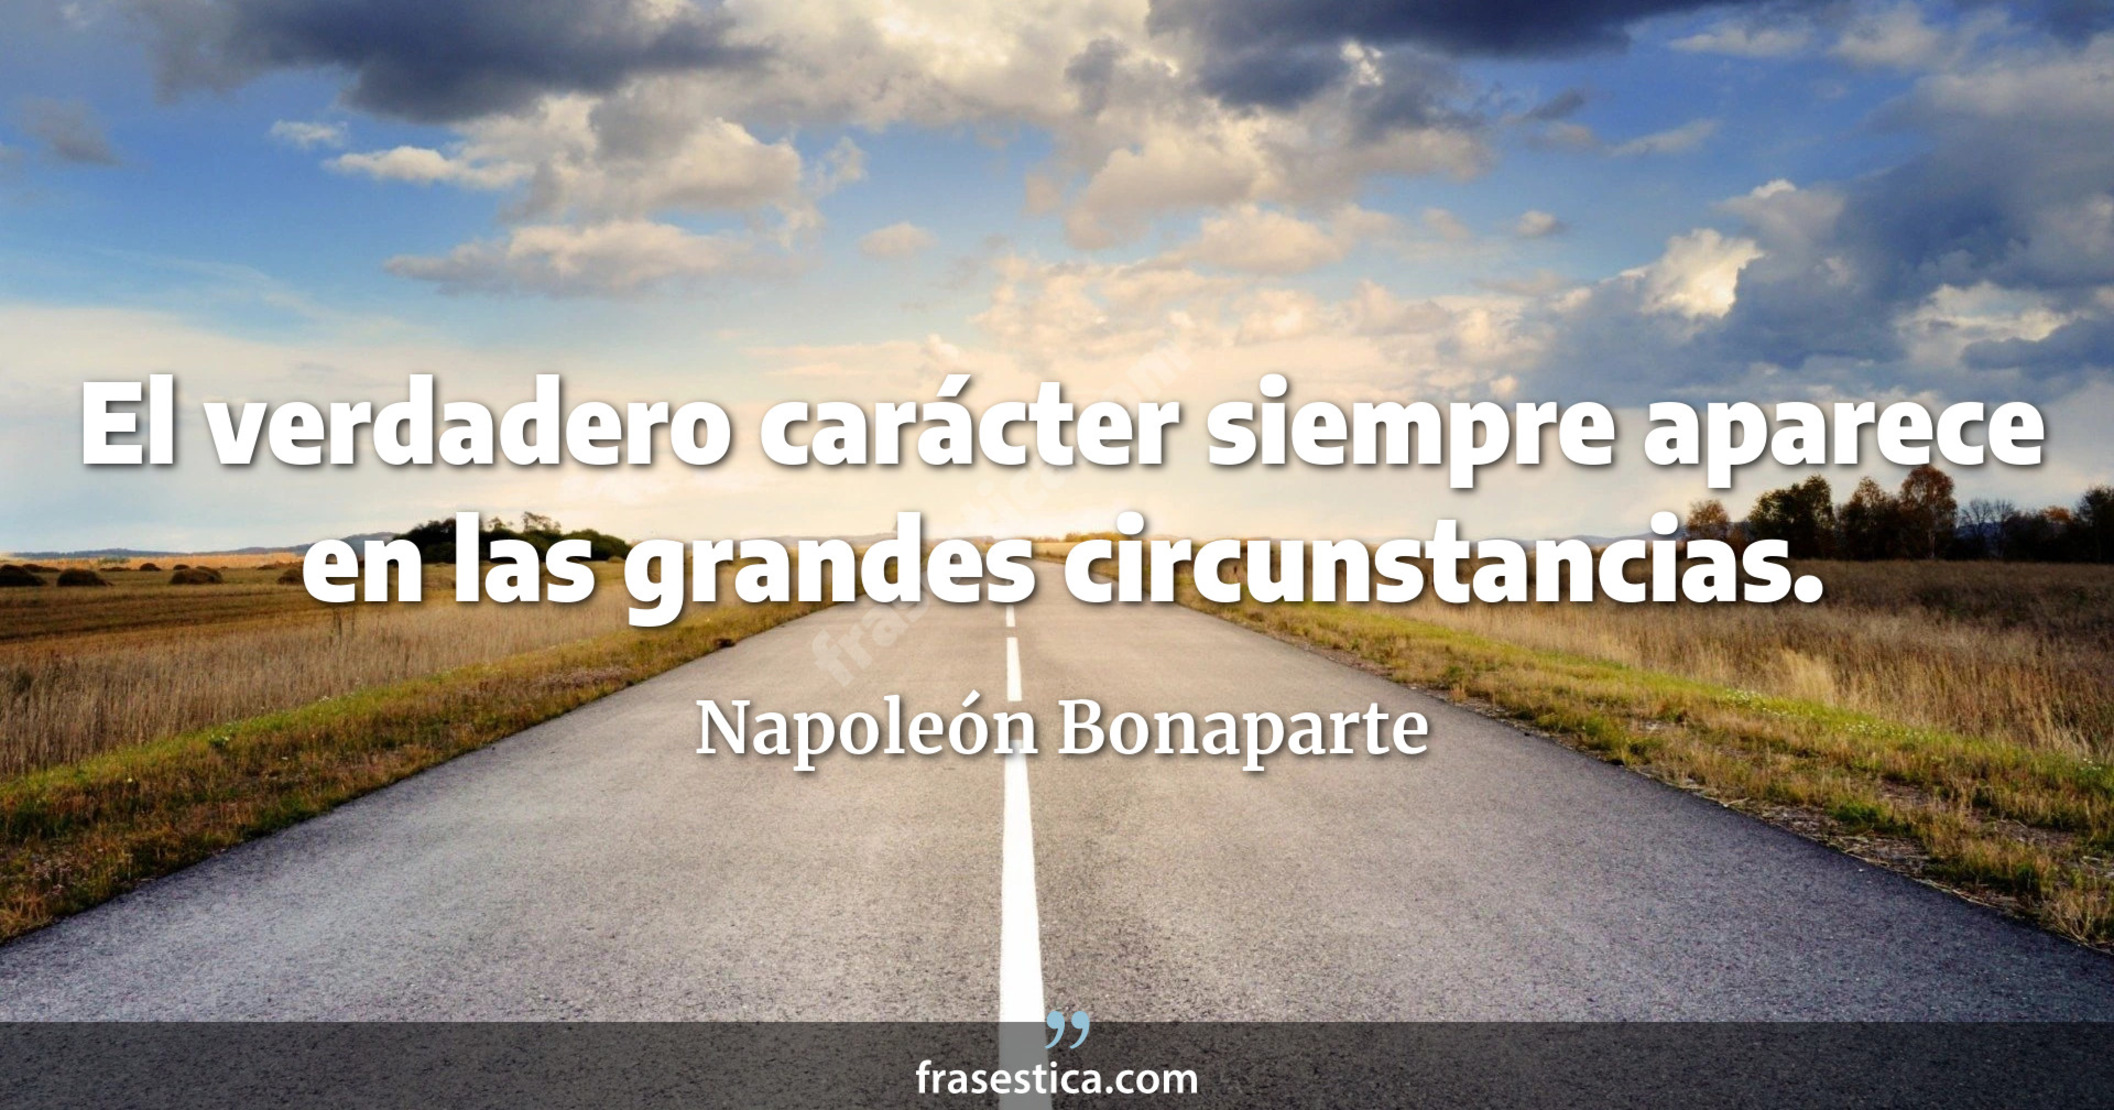 El verdadero carácter siempre aparece en las grandes circunstancias. - Napoleón Bonaparte